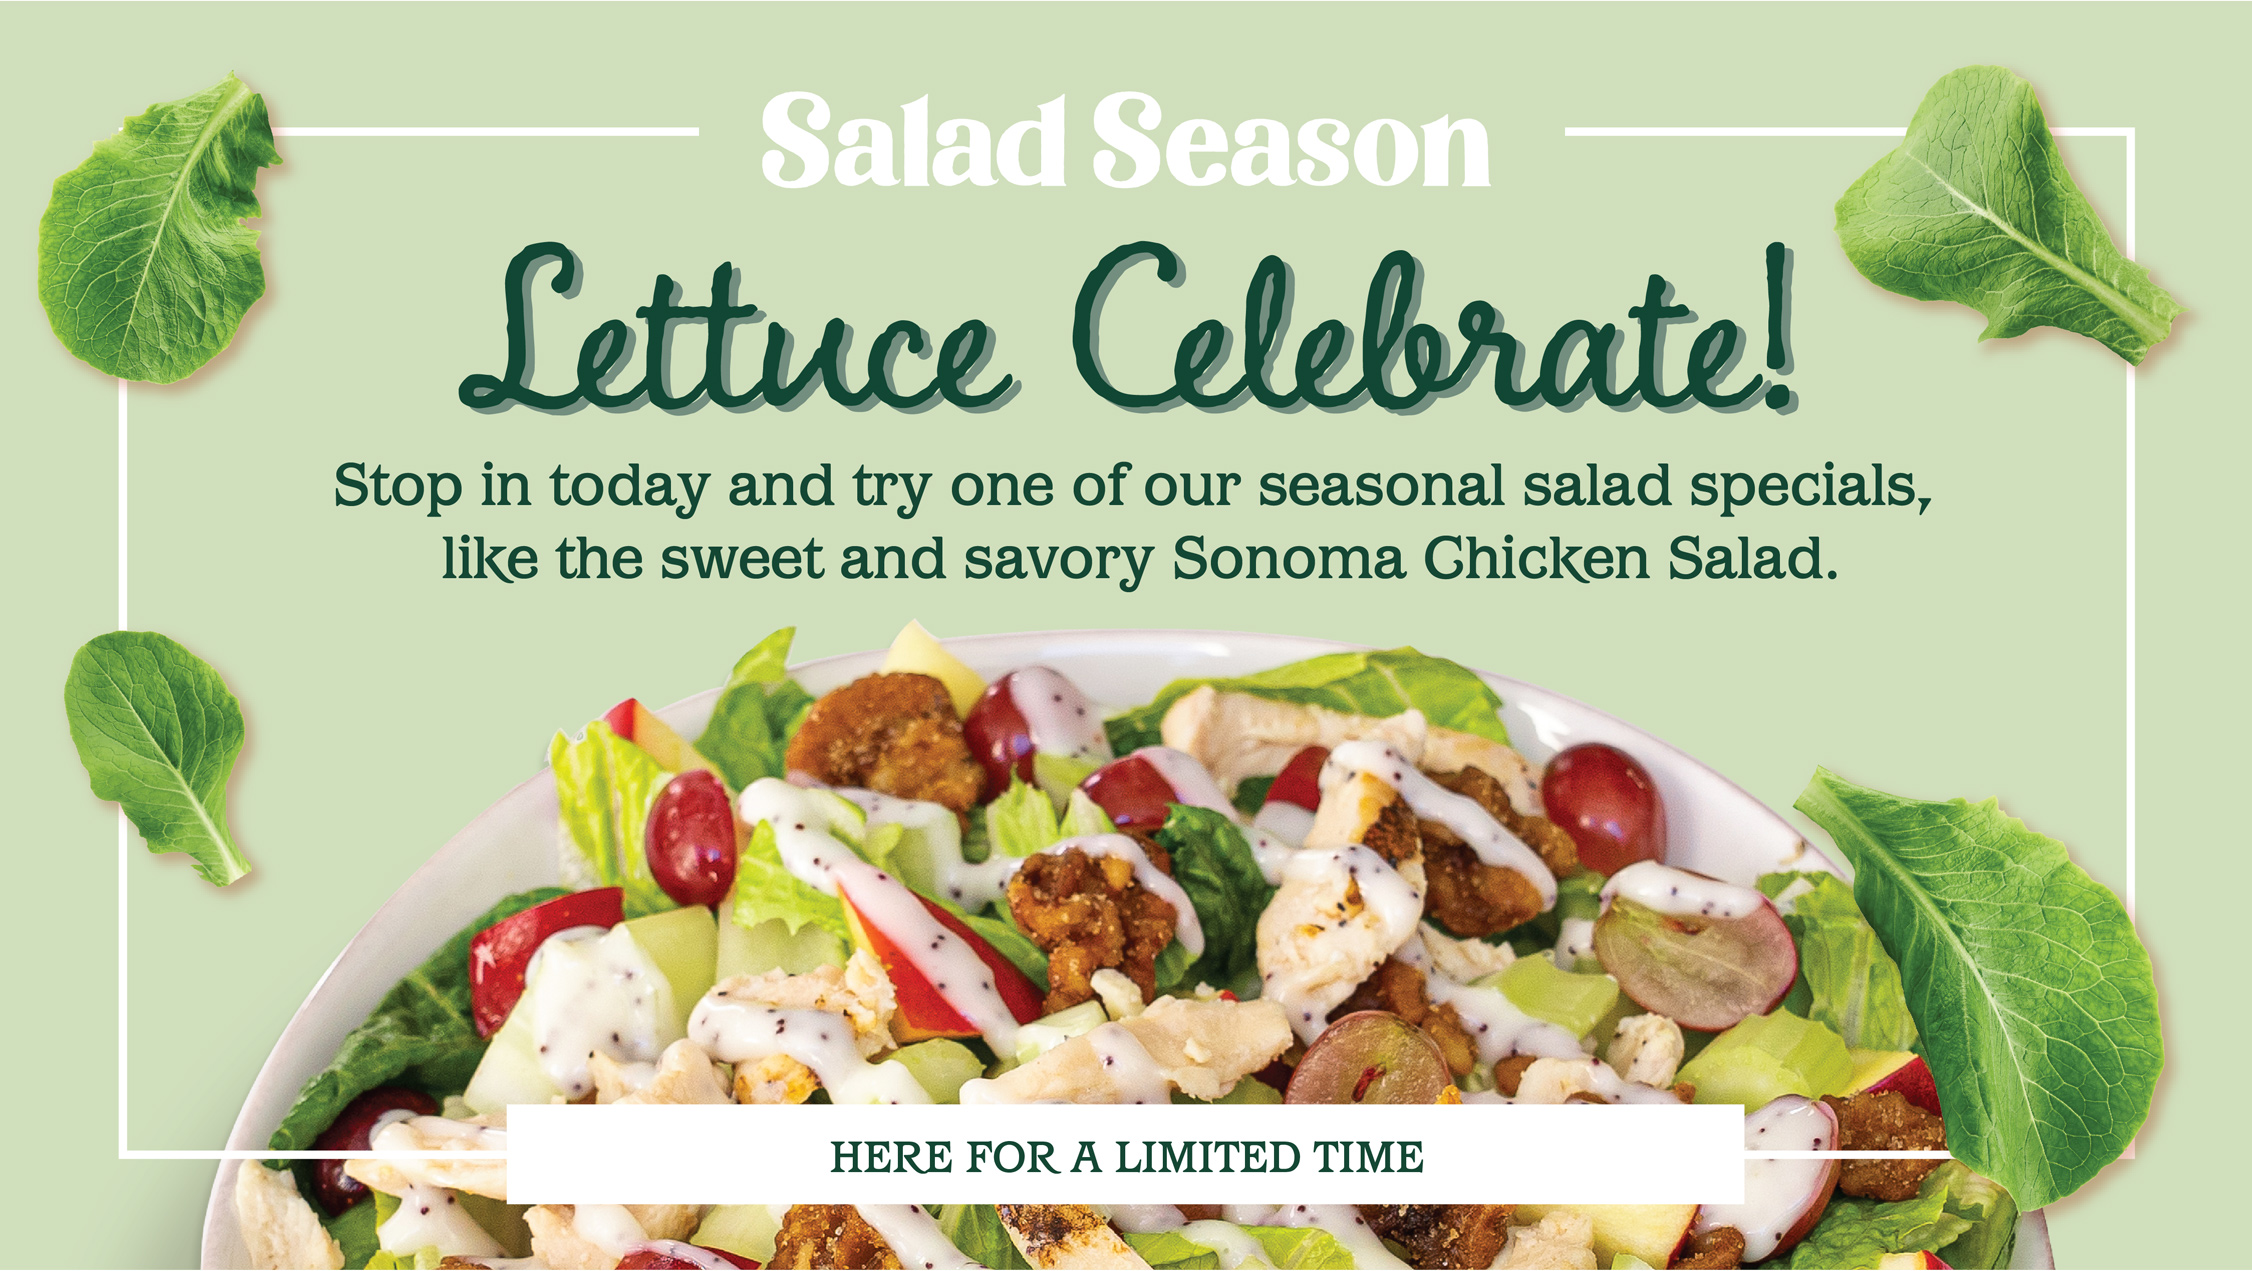 Salad Season is Back